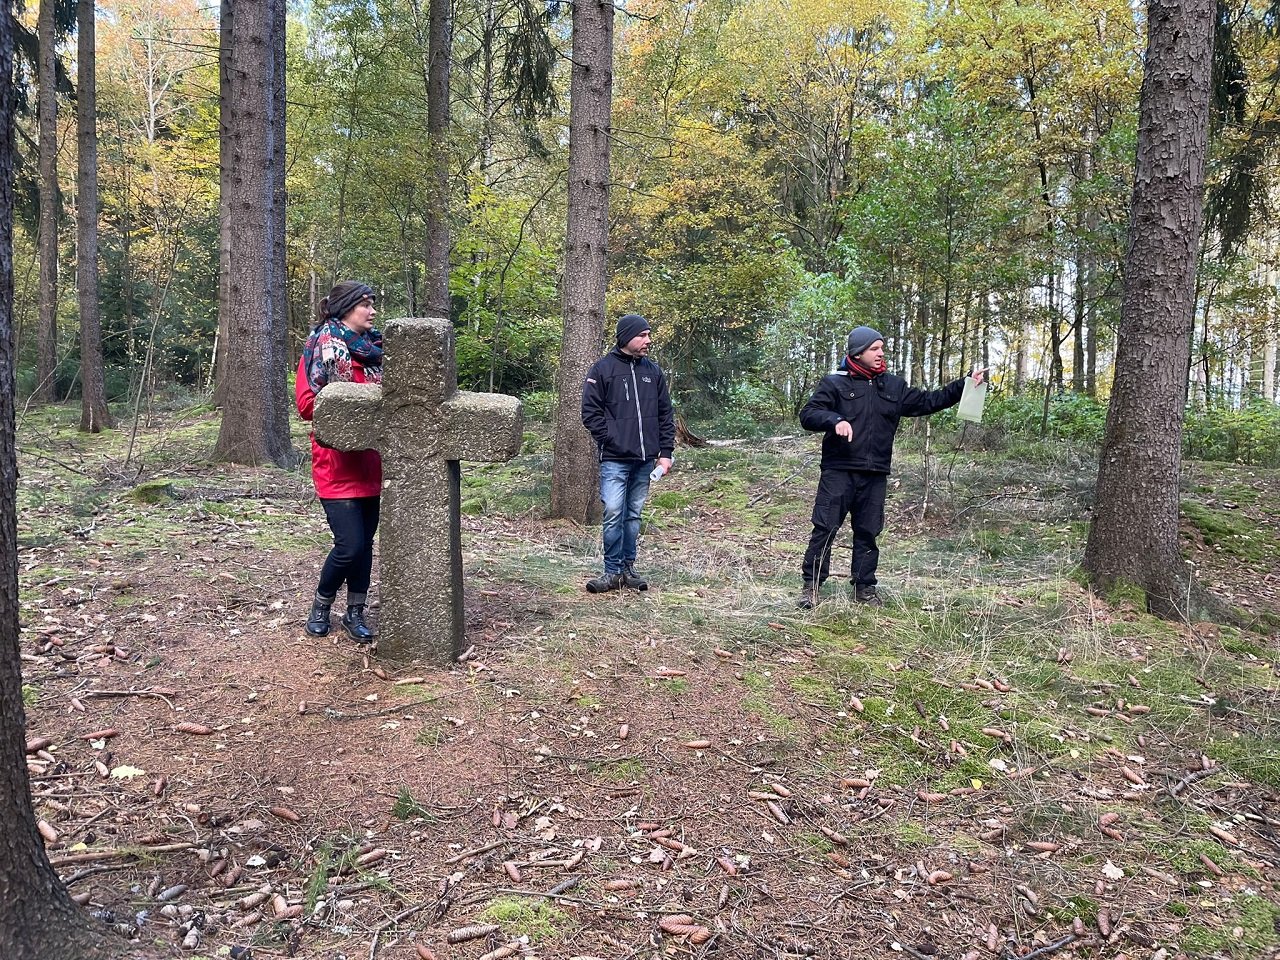 Eindruck von der Probebegehung von Waldsassen (von links nach rechts: Maria Oberleitner, André Gießübl, Florian Wein). Bild: Freya Fehse